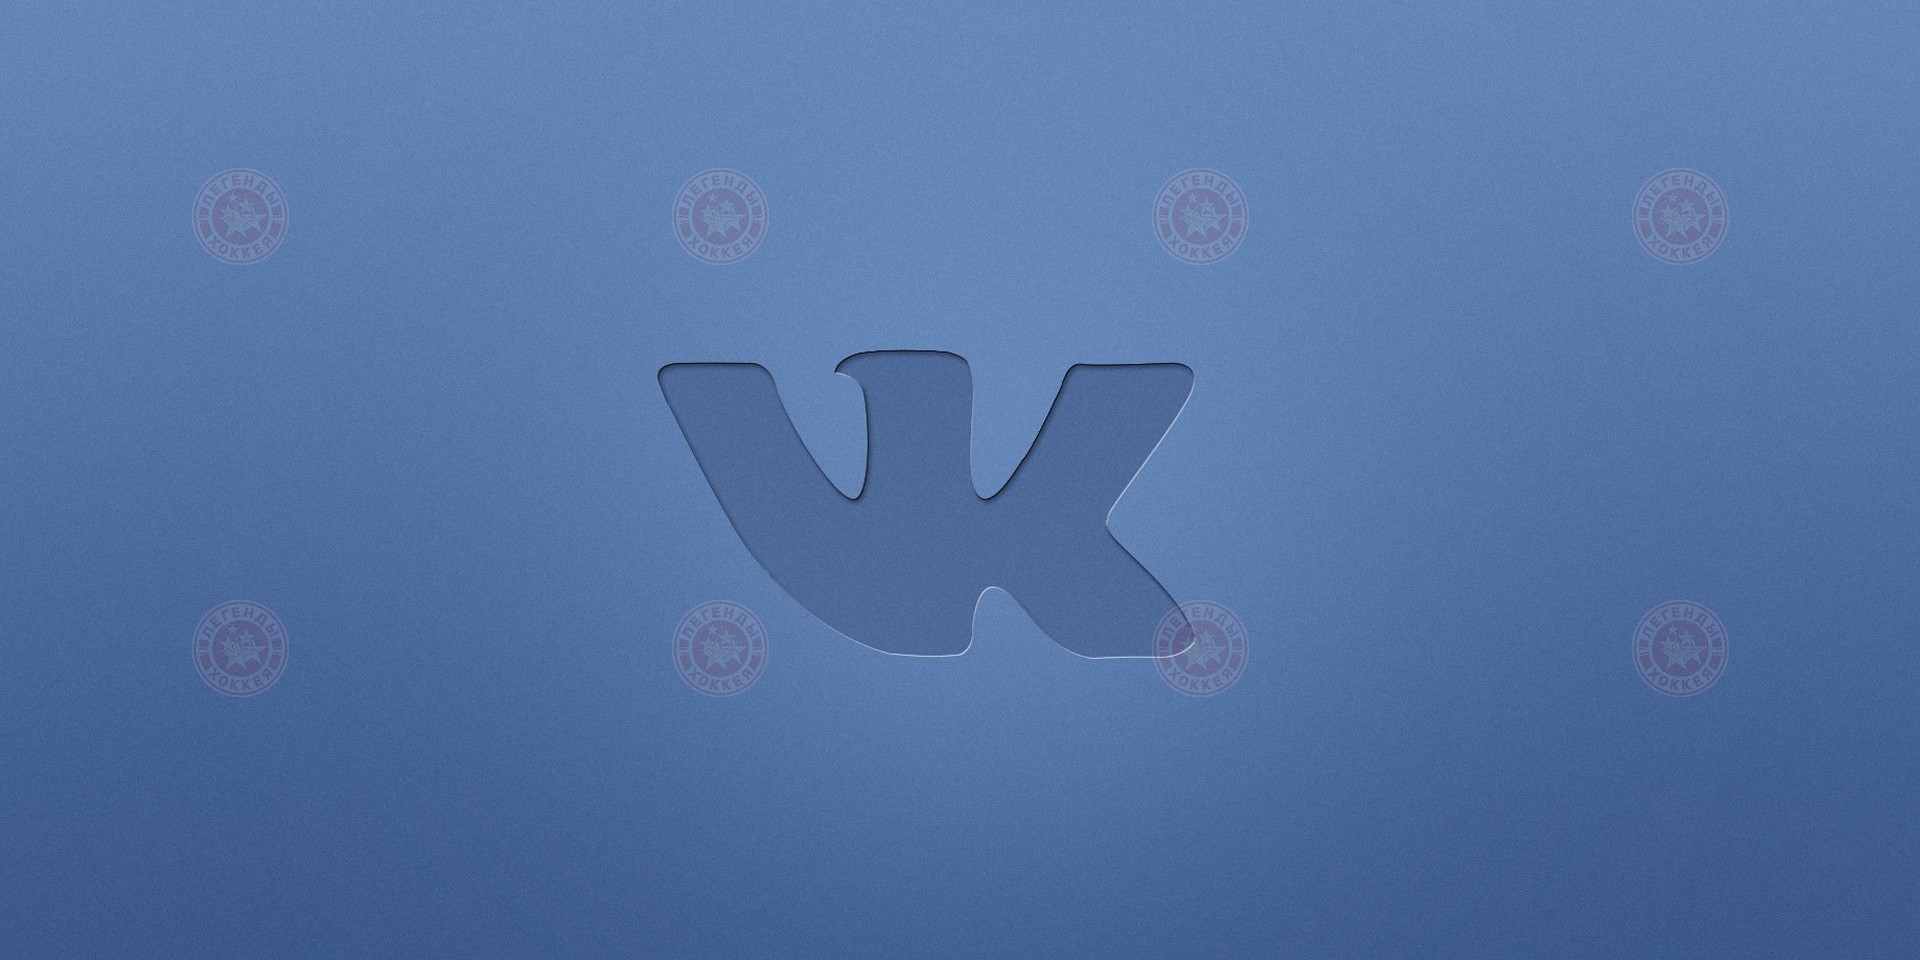 Подписывайтесь на группу "Легенды Хоккея" ВКонтакте!